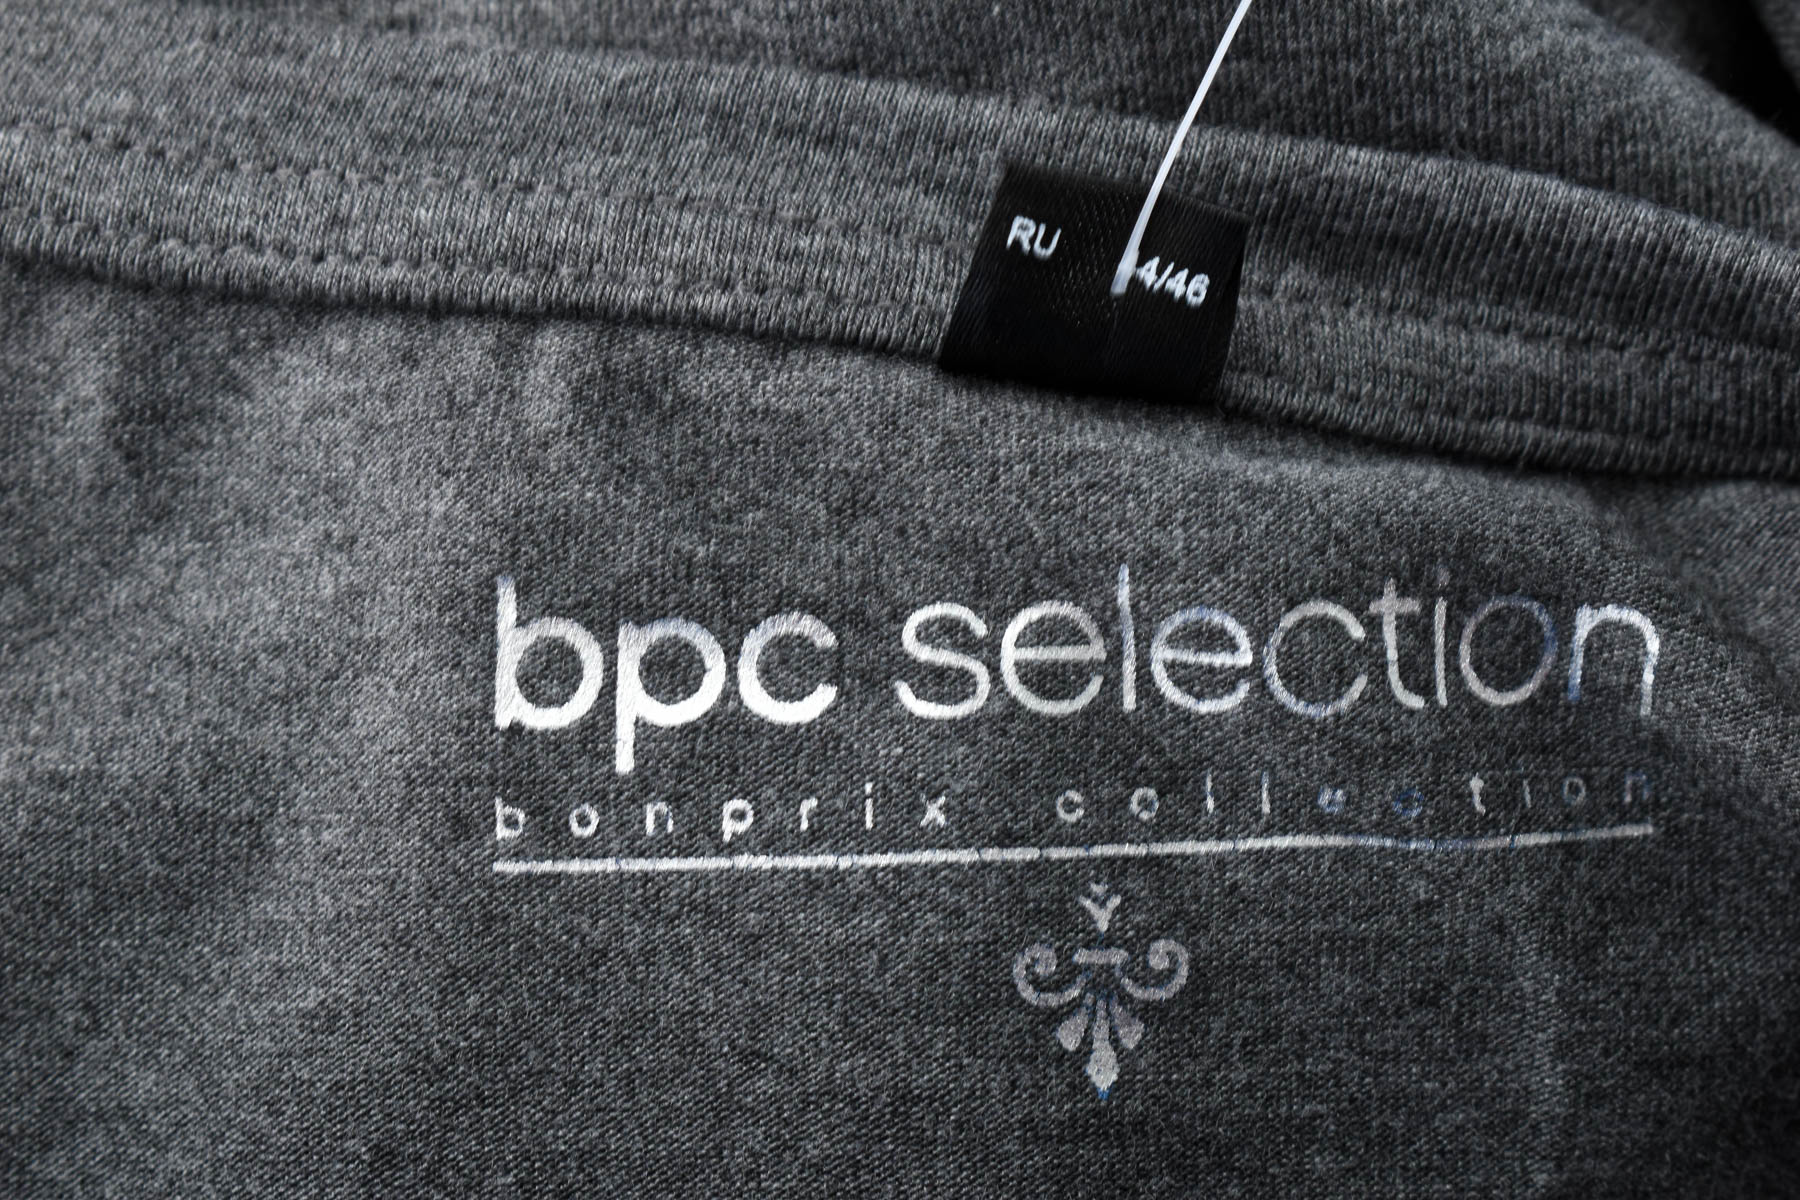 Γυναικεία μπλούζα - Bpc selection bonprix collection - 2